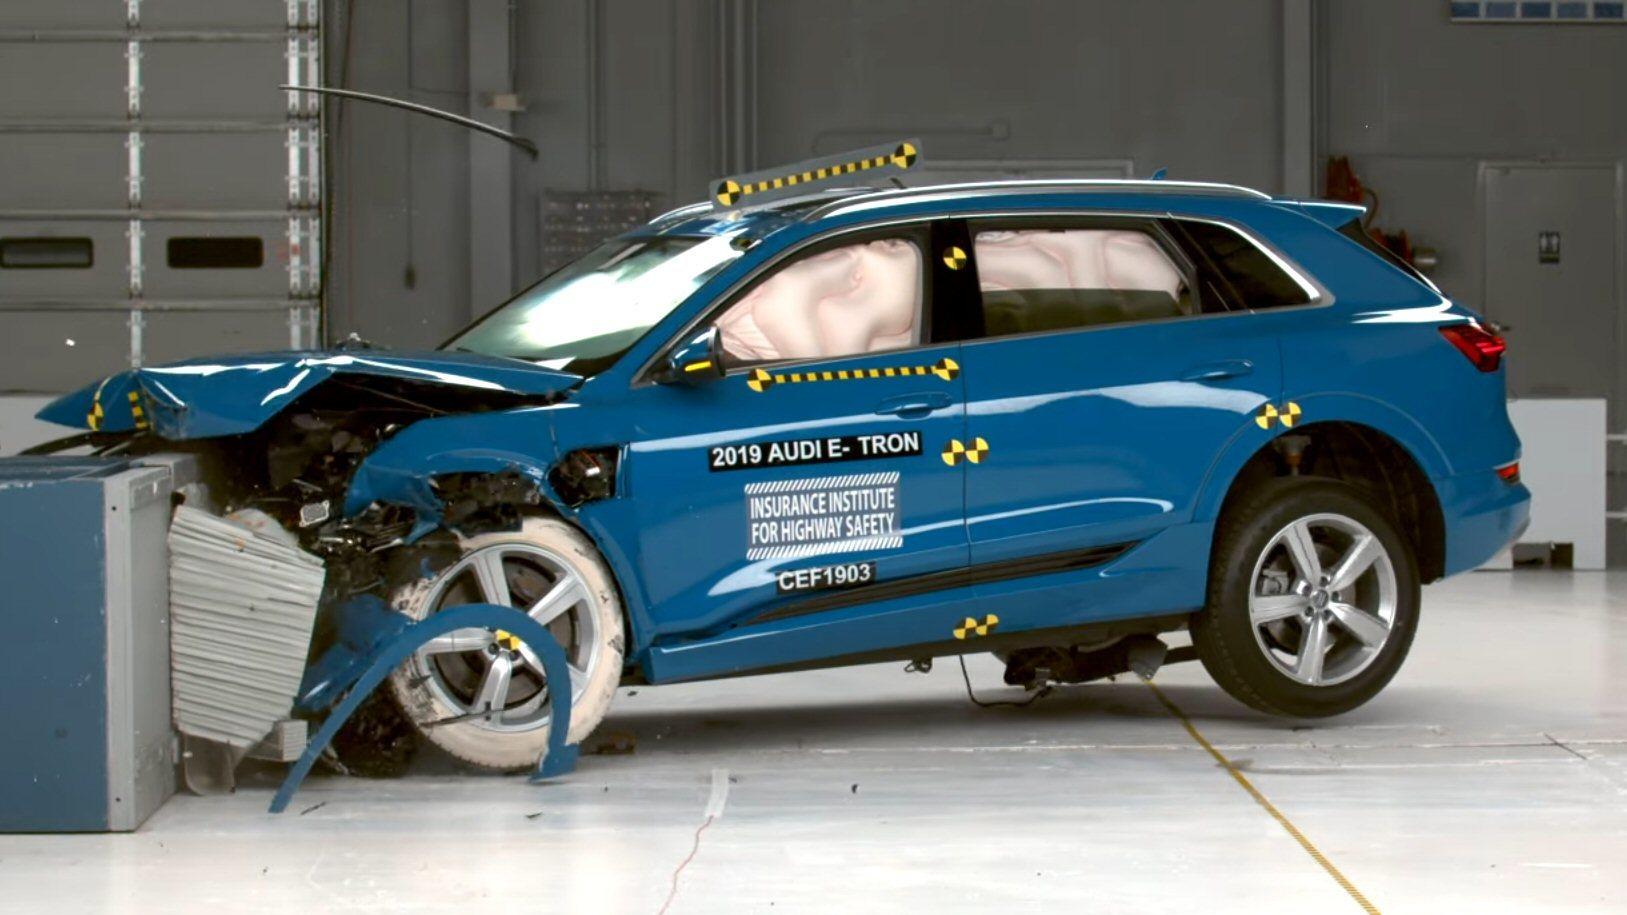 Audi e-tron får toppscore i amerikansk krasjtest